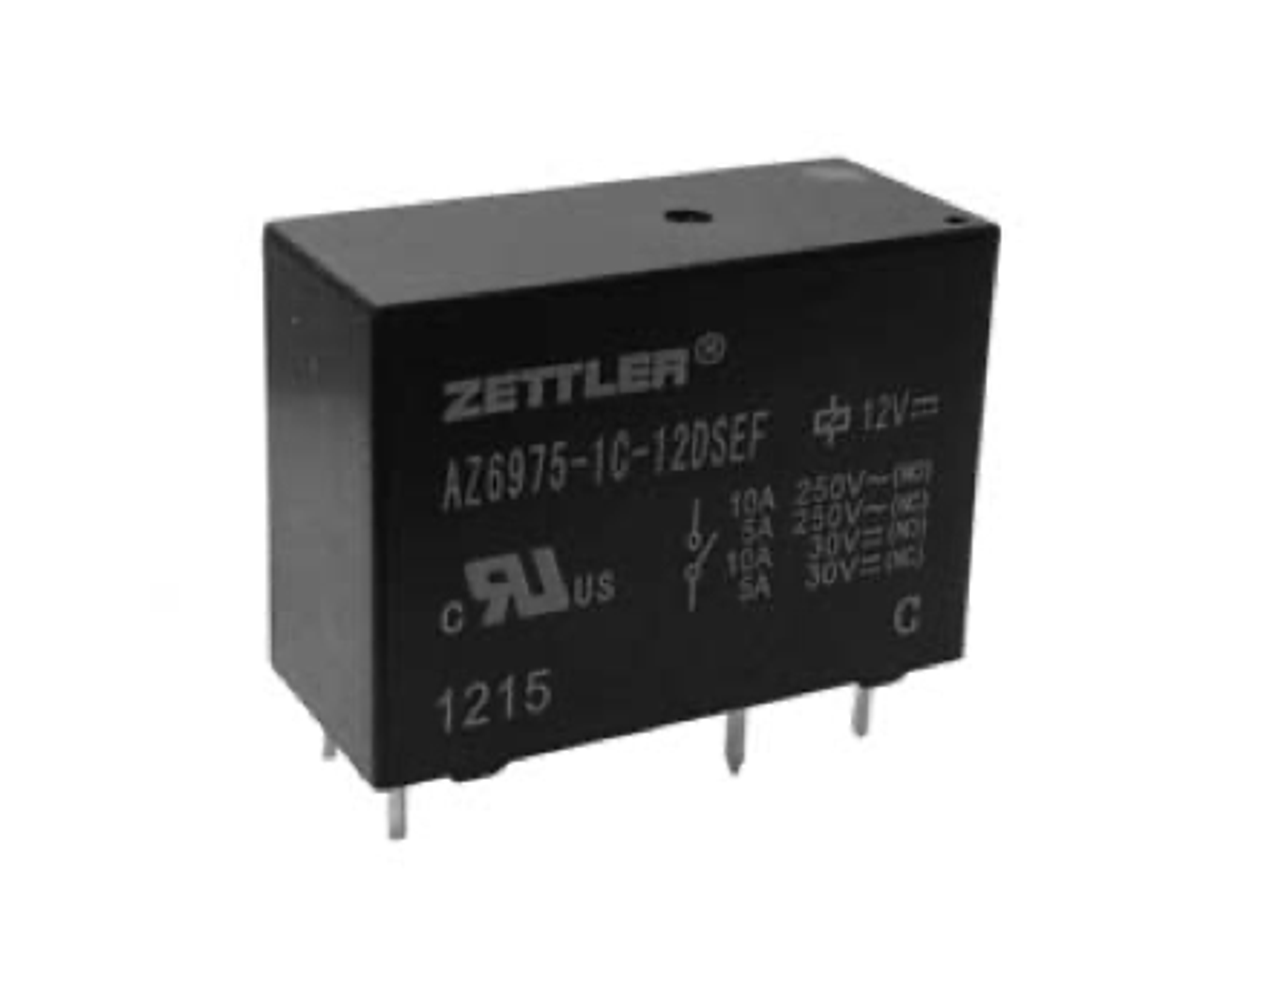 American Zettler AZ6975-1A-24DS Power Relay